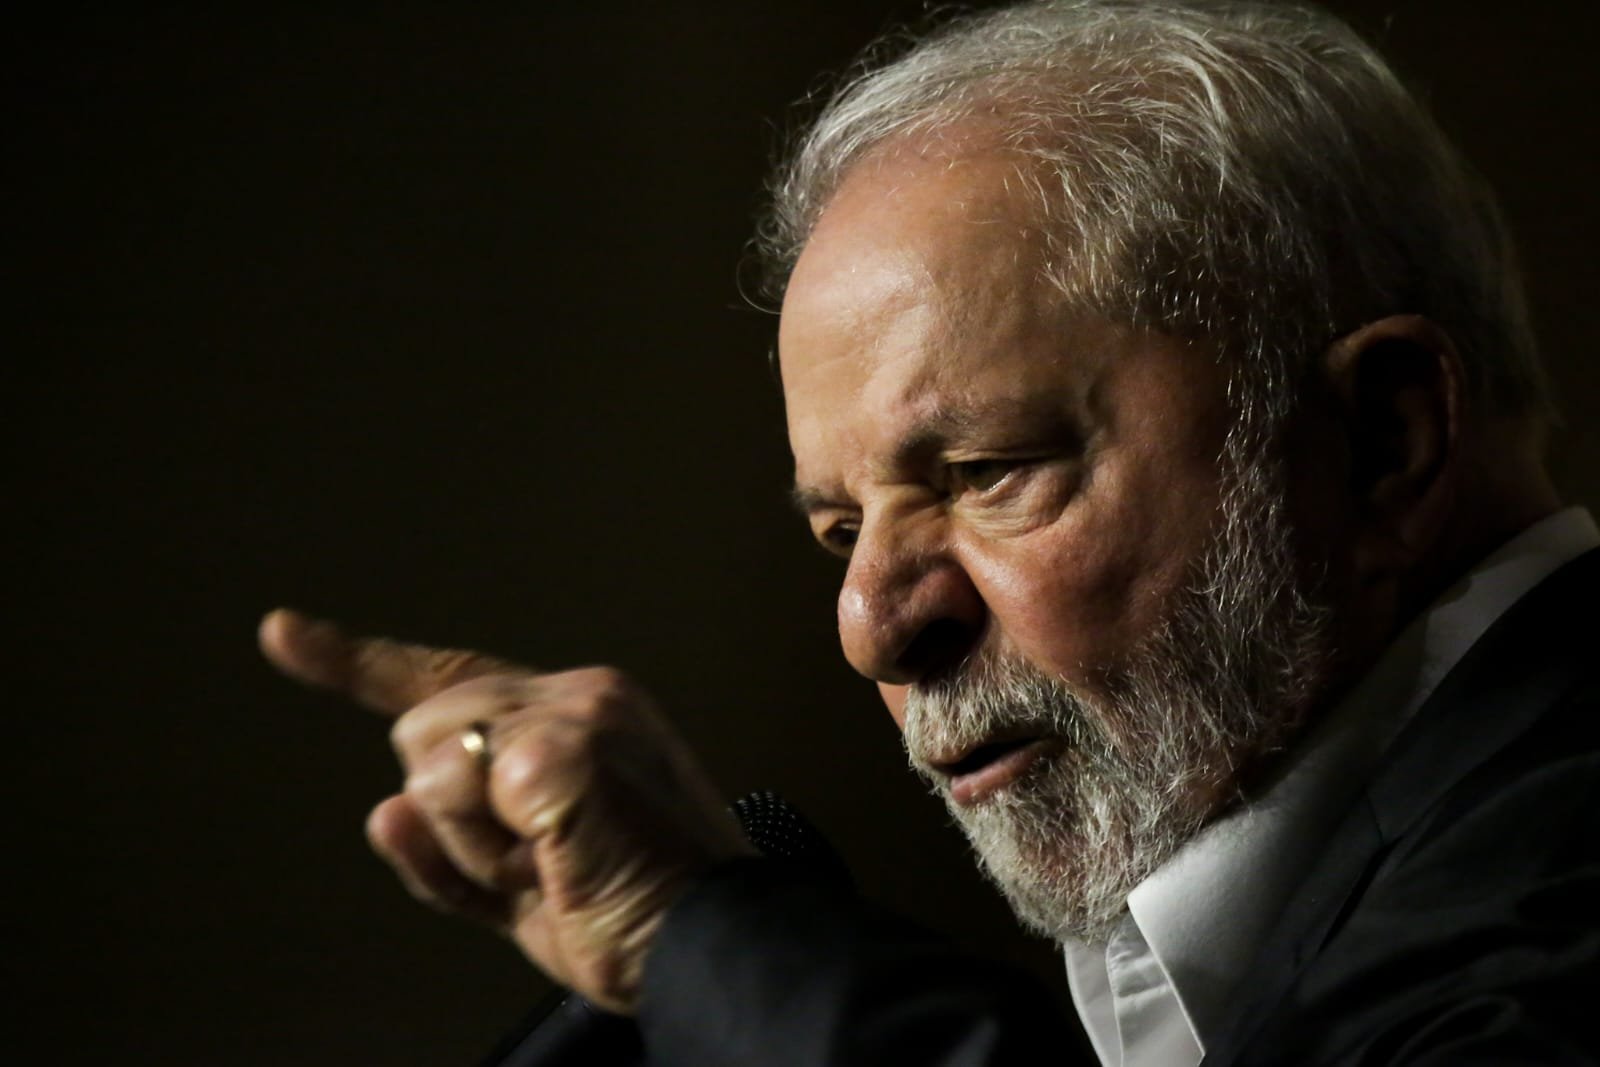 Candidato a presidência da República, Luiz Inácio Lula da Silva, discursa durante a Convenção Nacional do PSB em Brasília